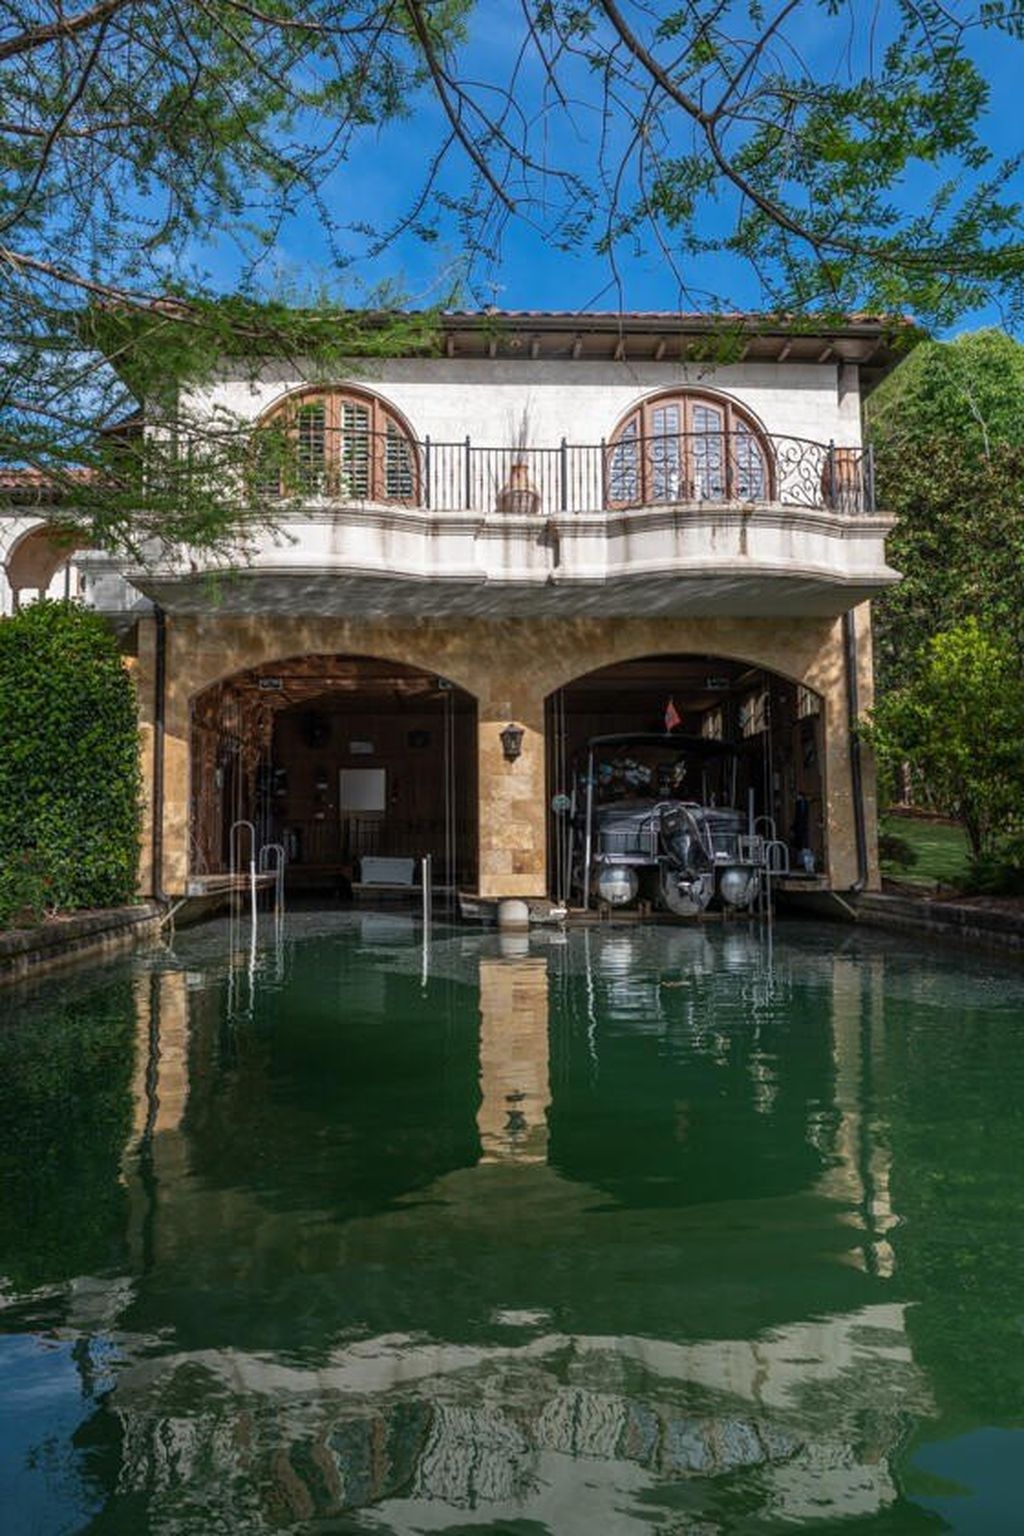 Stunning italian villa with picturesque alabama setting seeks 8. 59 million 8